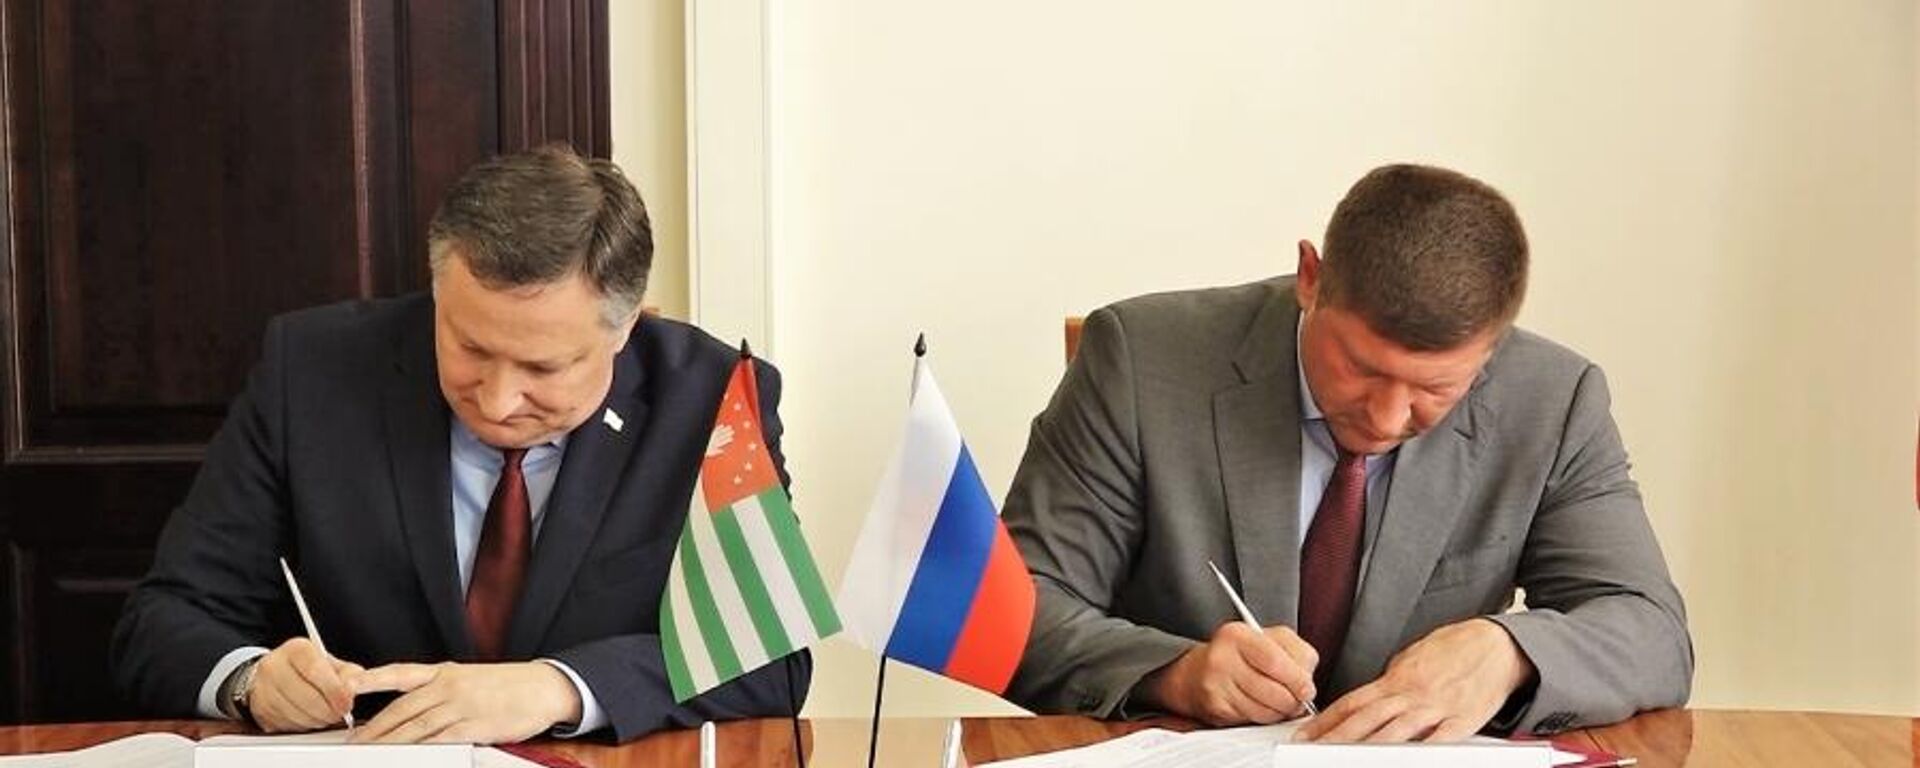 Мэры Сухума и Краснодара подписали соглашение о торжественном подтверждении побратимских связей - Sputnik Аҧсны, 1920, 25.06.2022